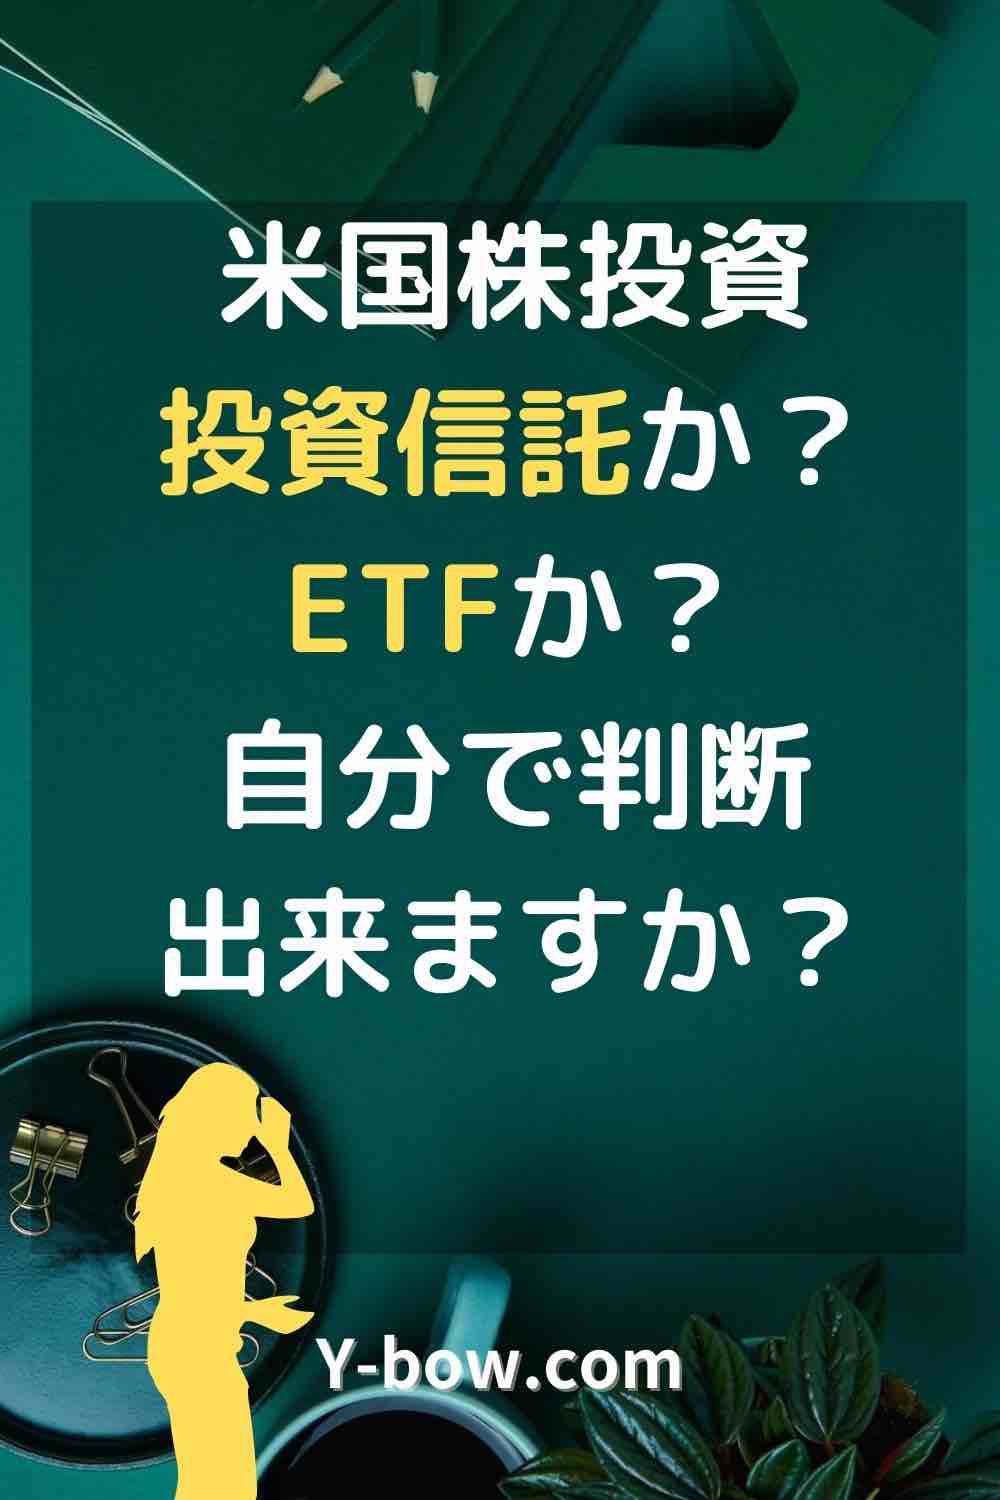 ETFにするか投資信託にするかのポイント